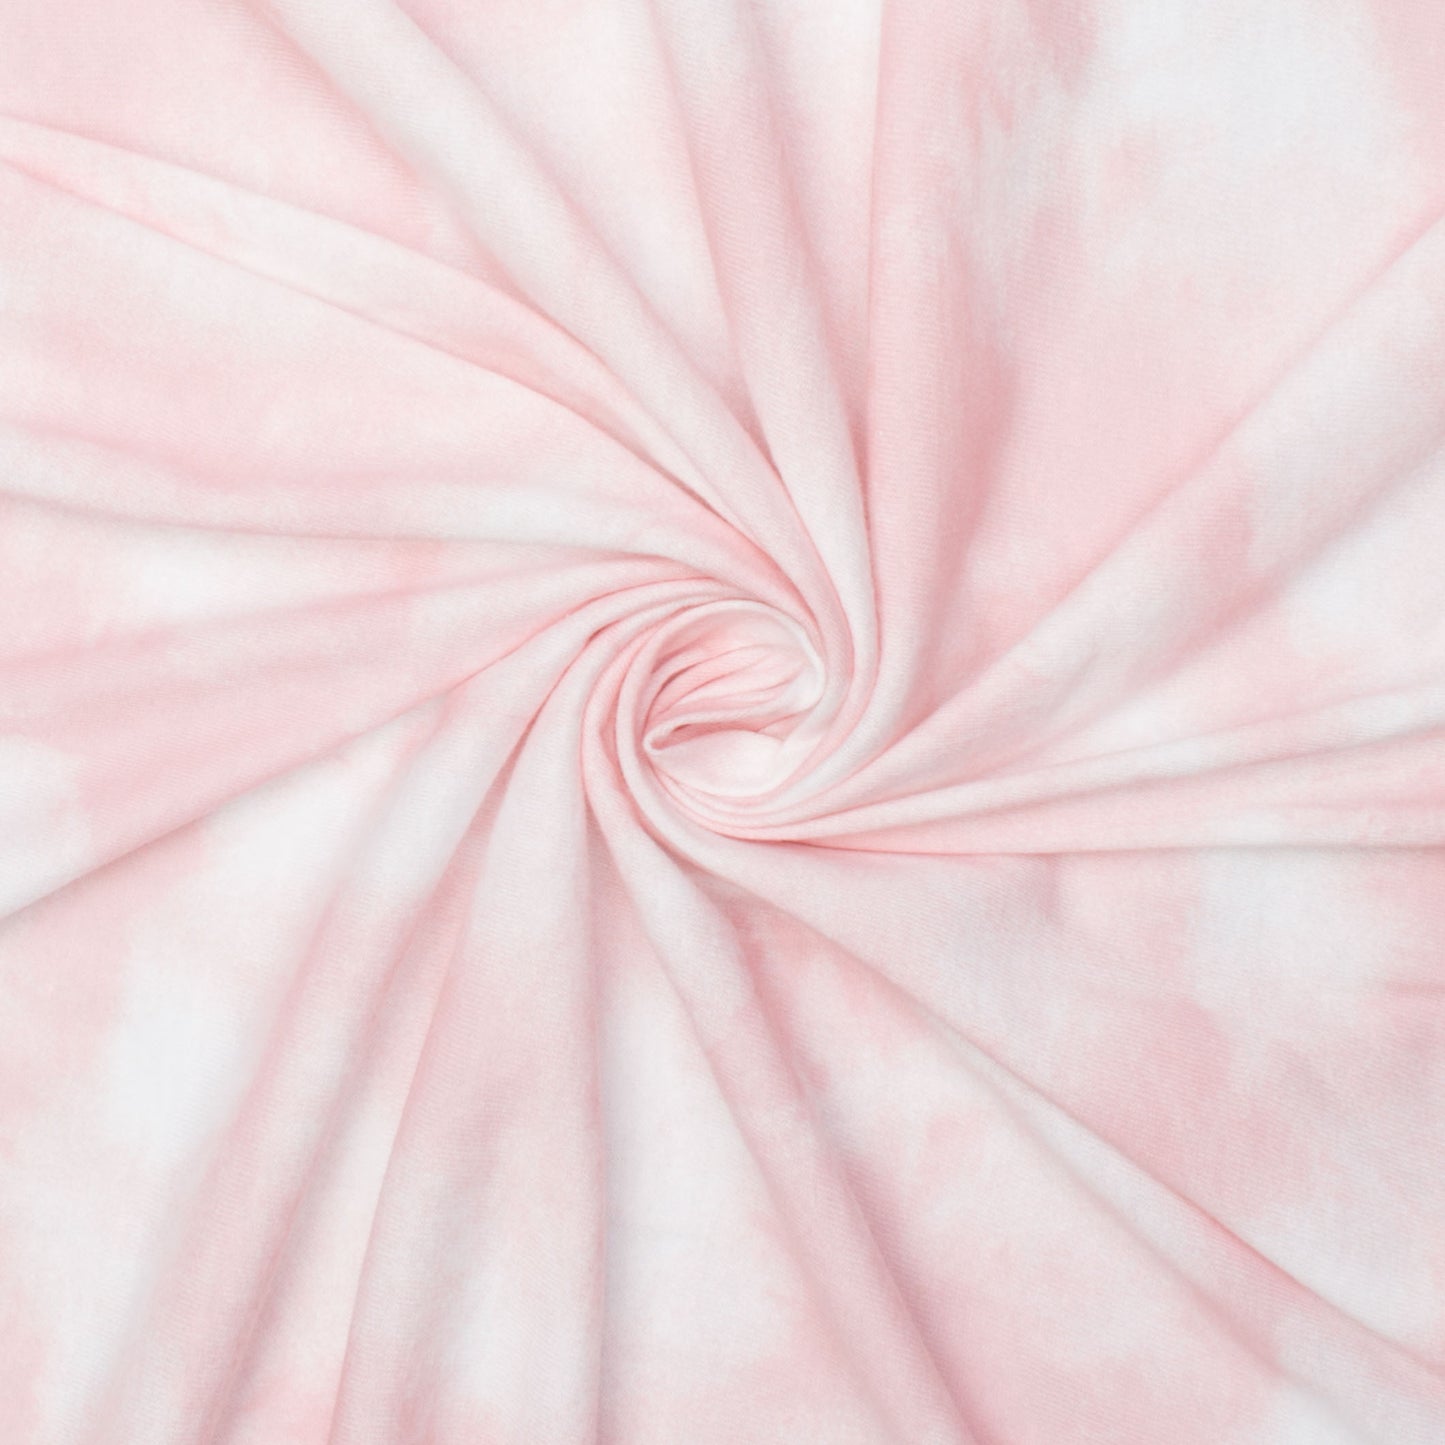 Printed Knit Pink Tye Dye